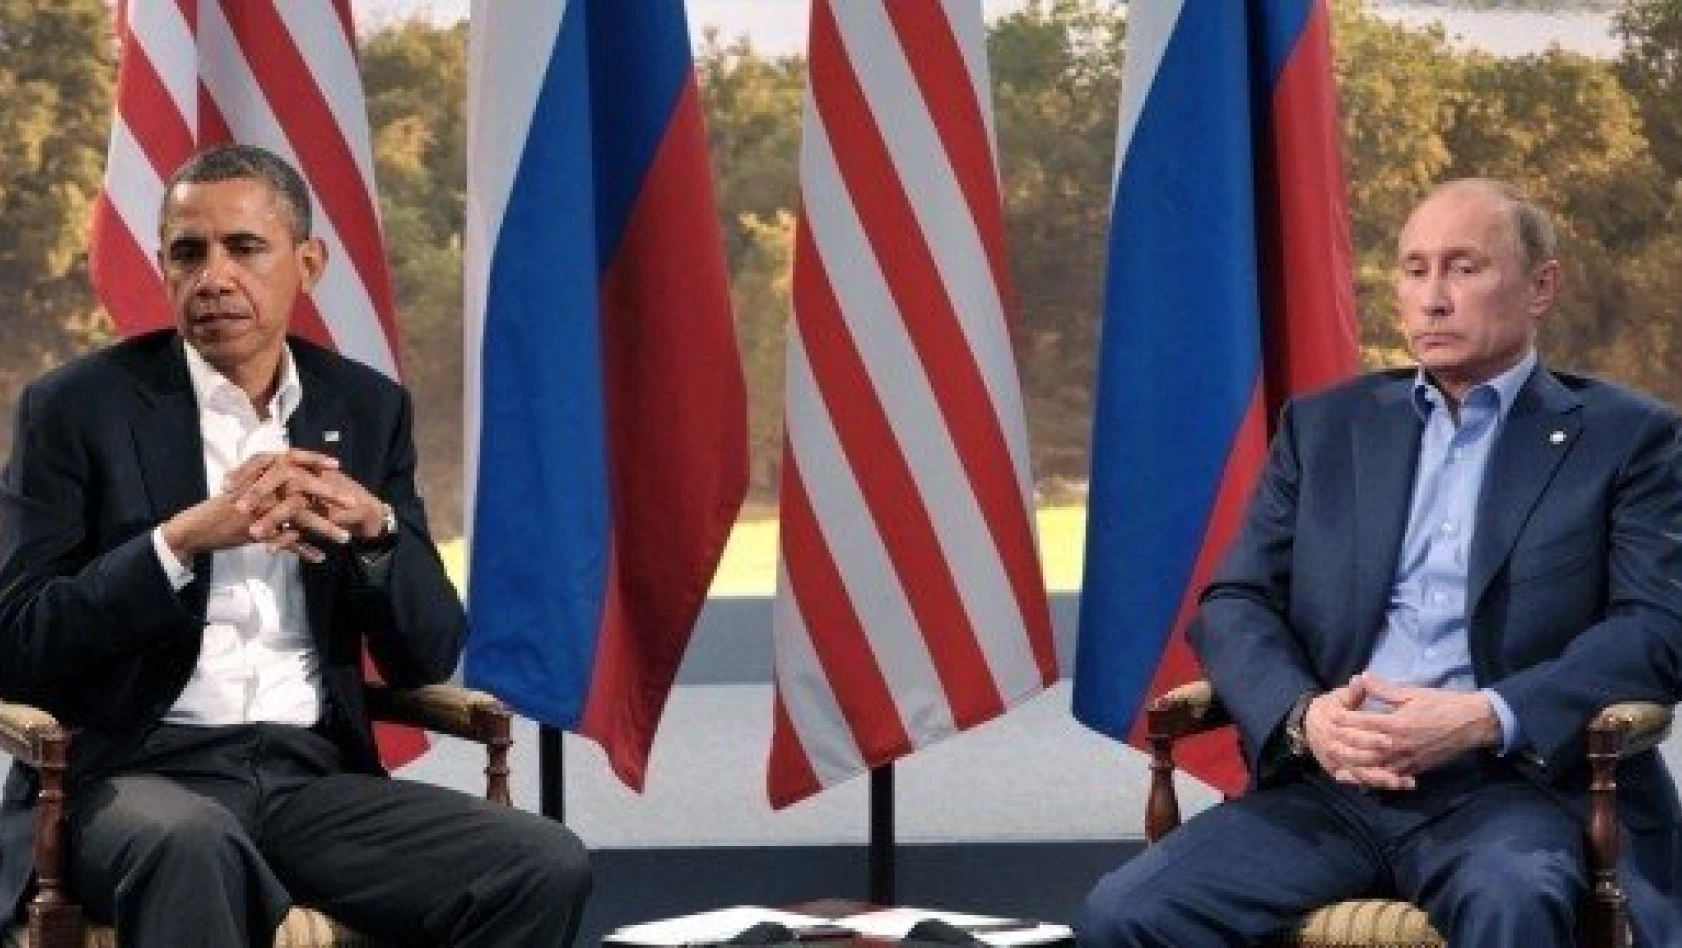 Putin, Obama ile buluştu: Suriye konusunda görüş ayrılıkları var